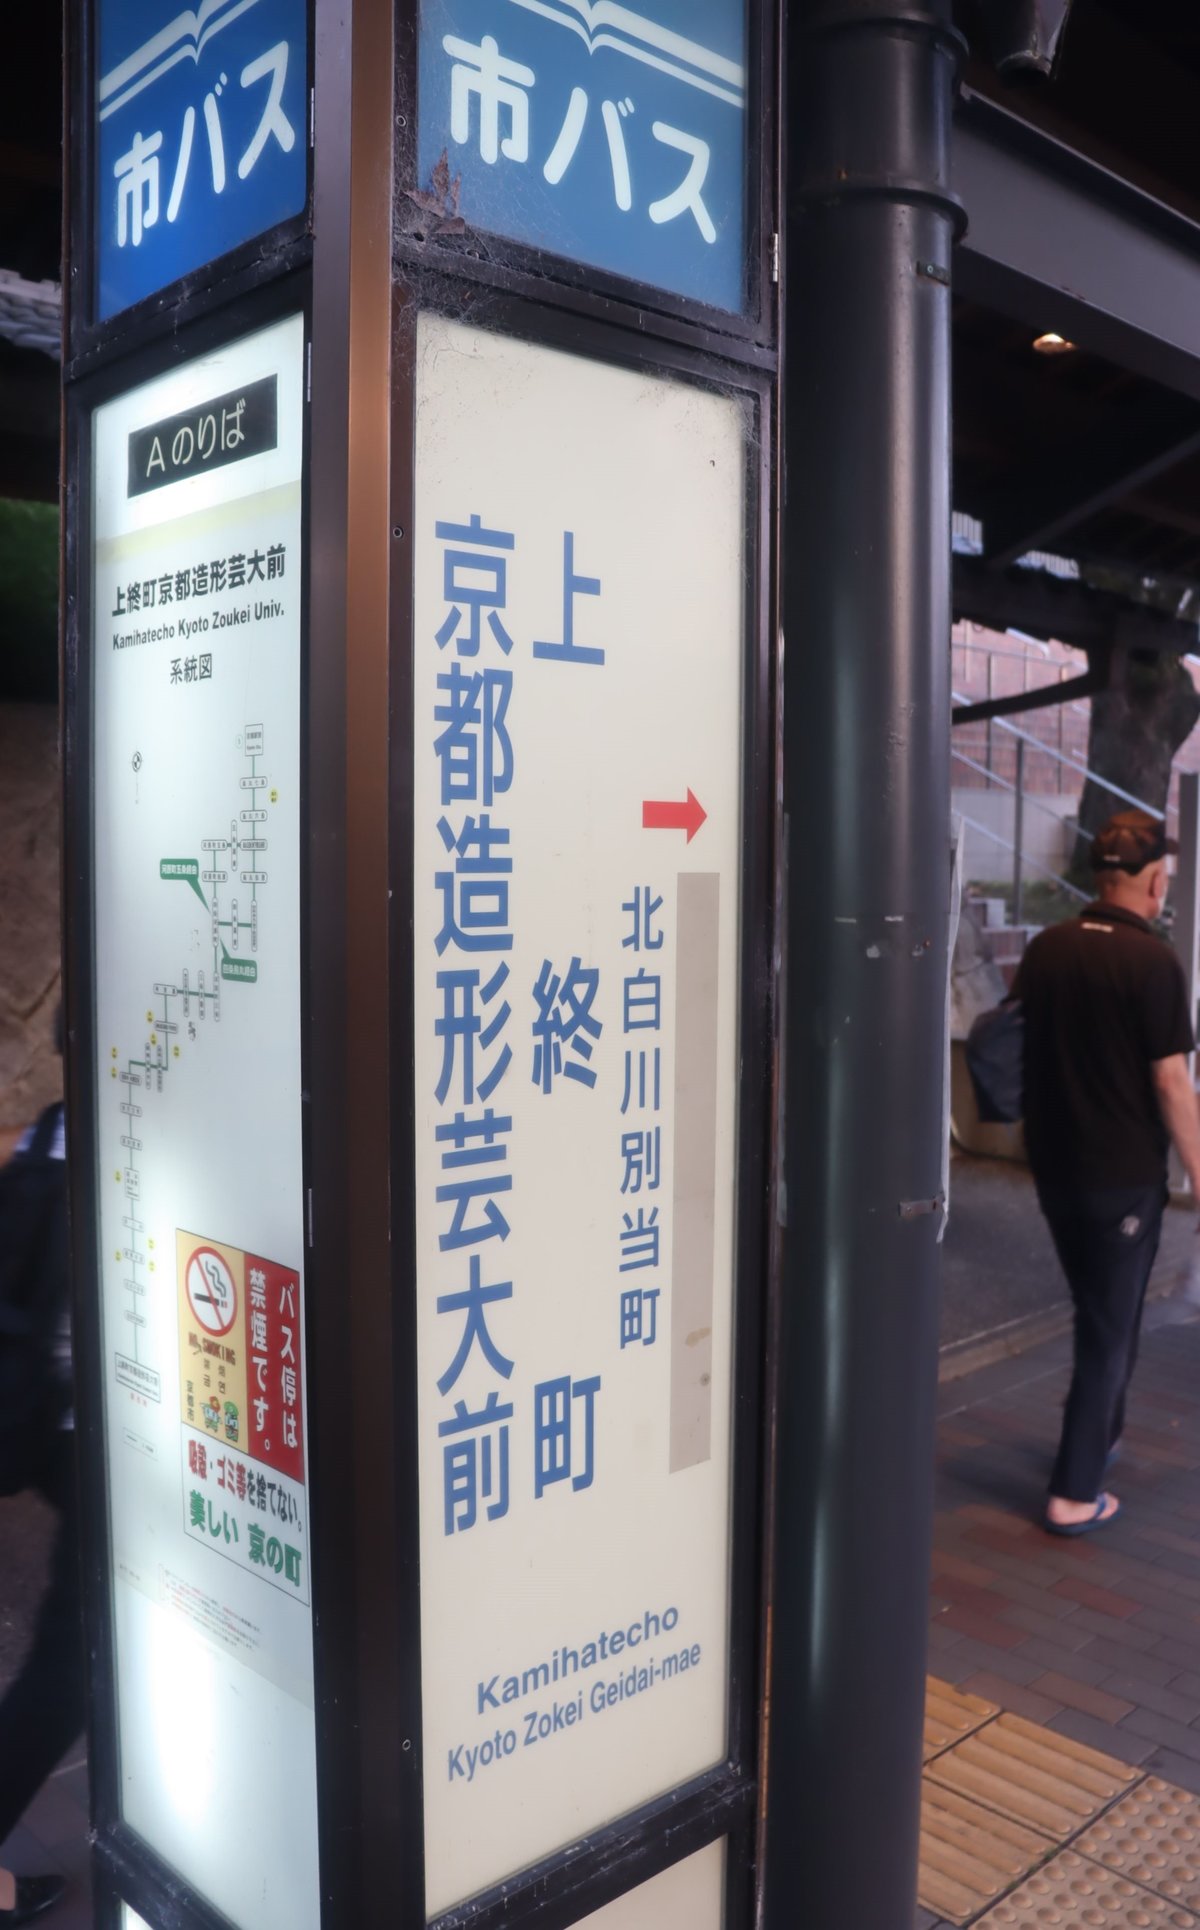 大学名めぐり対立 バス停名の変更応じず 京都市が係争中の京都芸術大に 社会 地域のニュース 京都新聞